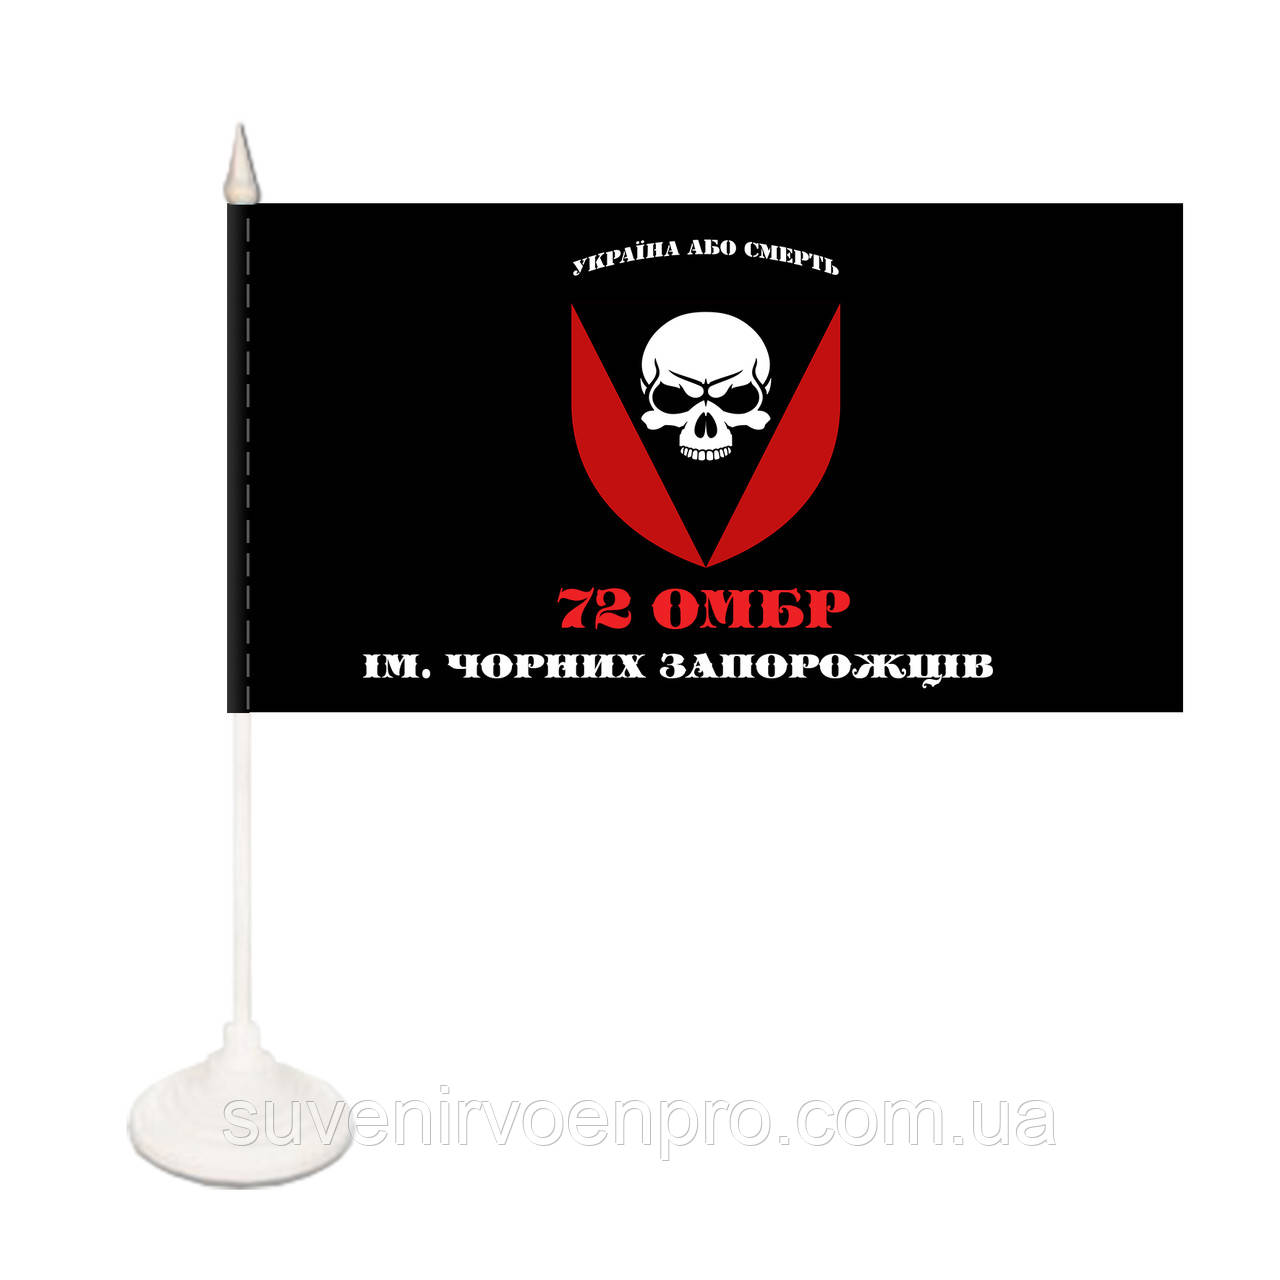 Настільний односторонній прапорець 72 омбр ім. Чорних Запорожців Україна або смерть (00525)